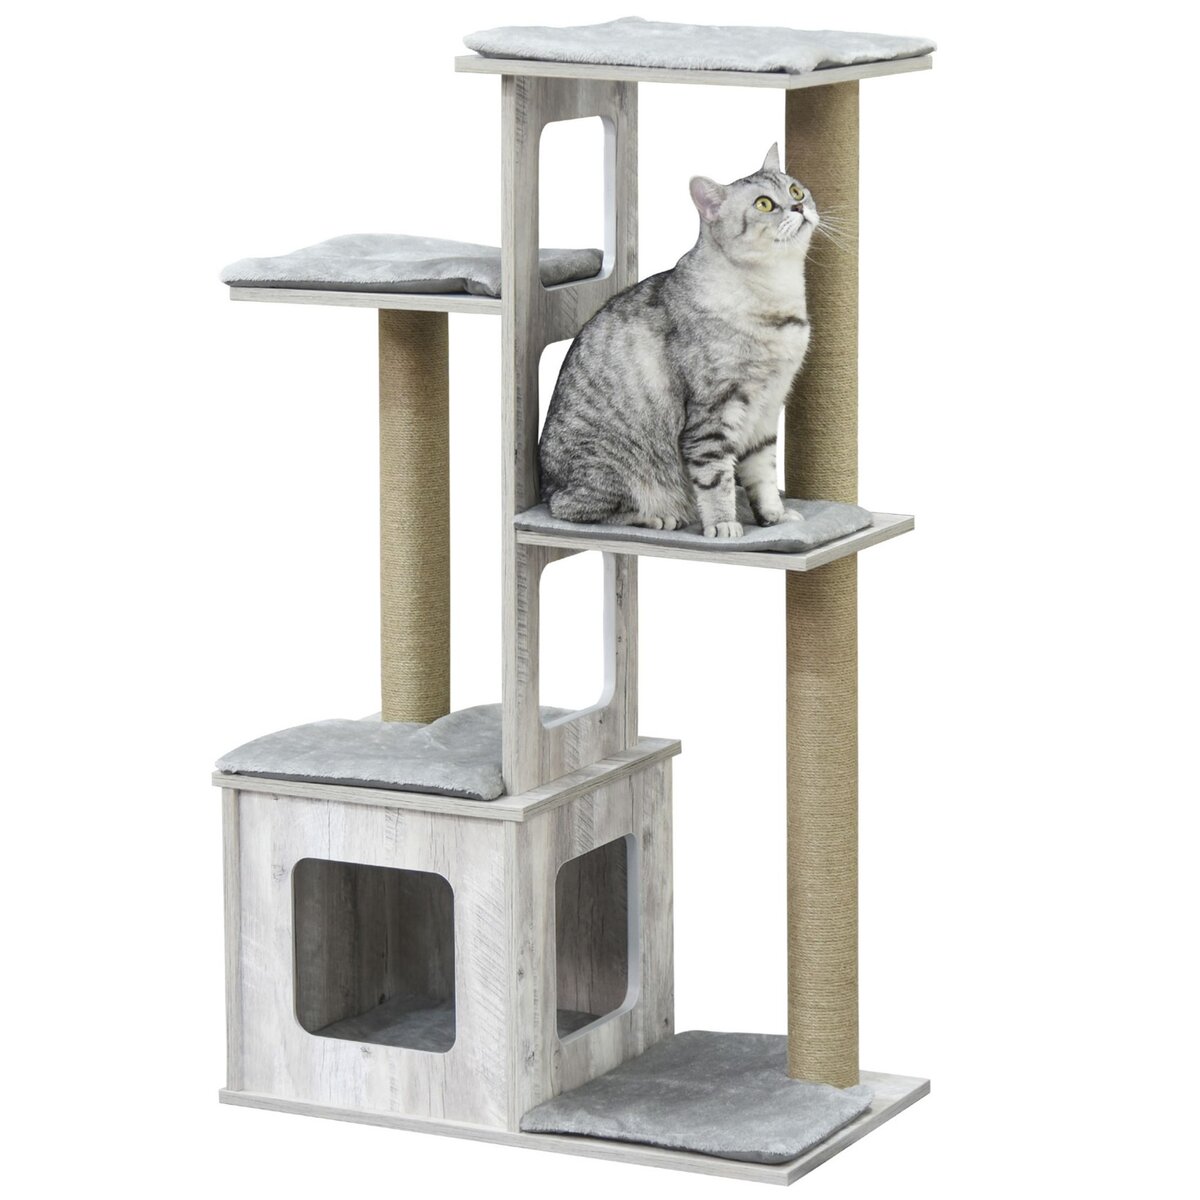 PAWHUT Arbre à chats design contemporain griffoirs grattoirs sisal naturel niche plate-formes 6 coussins MDF bois gris